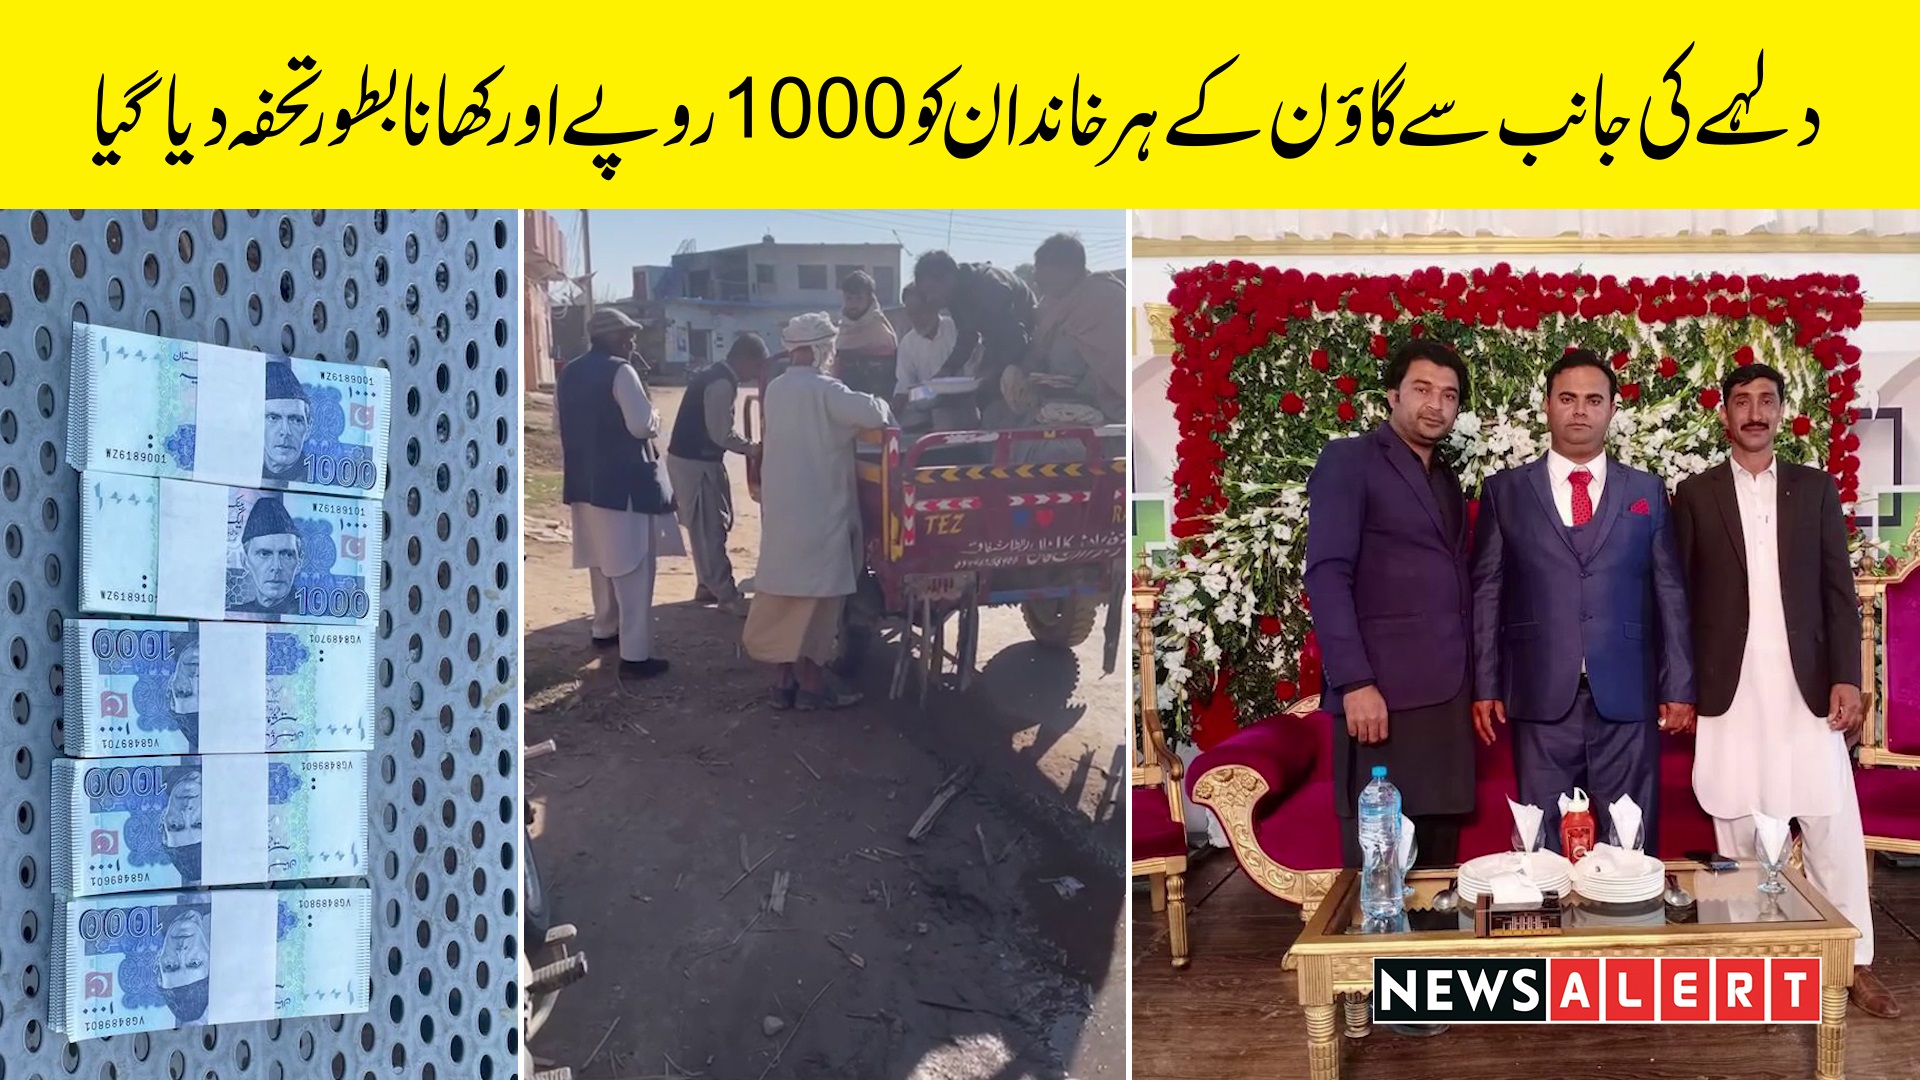 دولہے کا سلامیوں کی رقم لینے سے انکار ،شادی پر پورے گاؤں میں لاکھوں روپے تقسیم